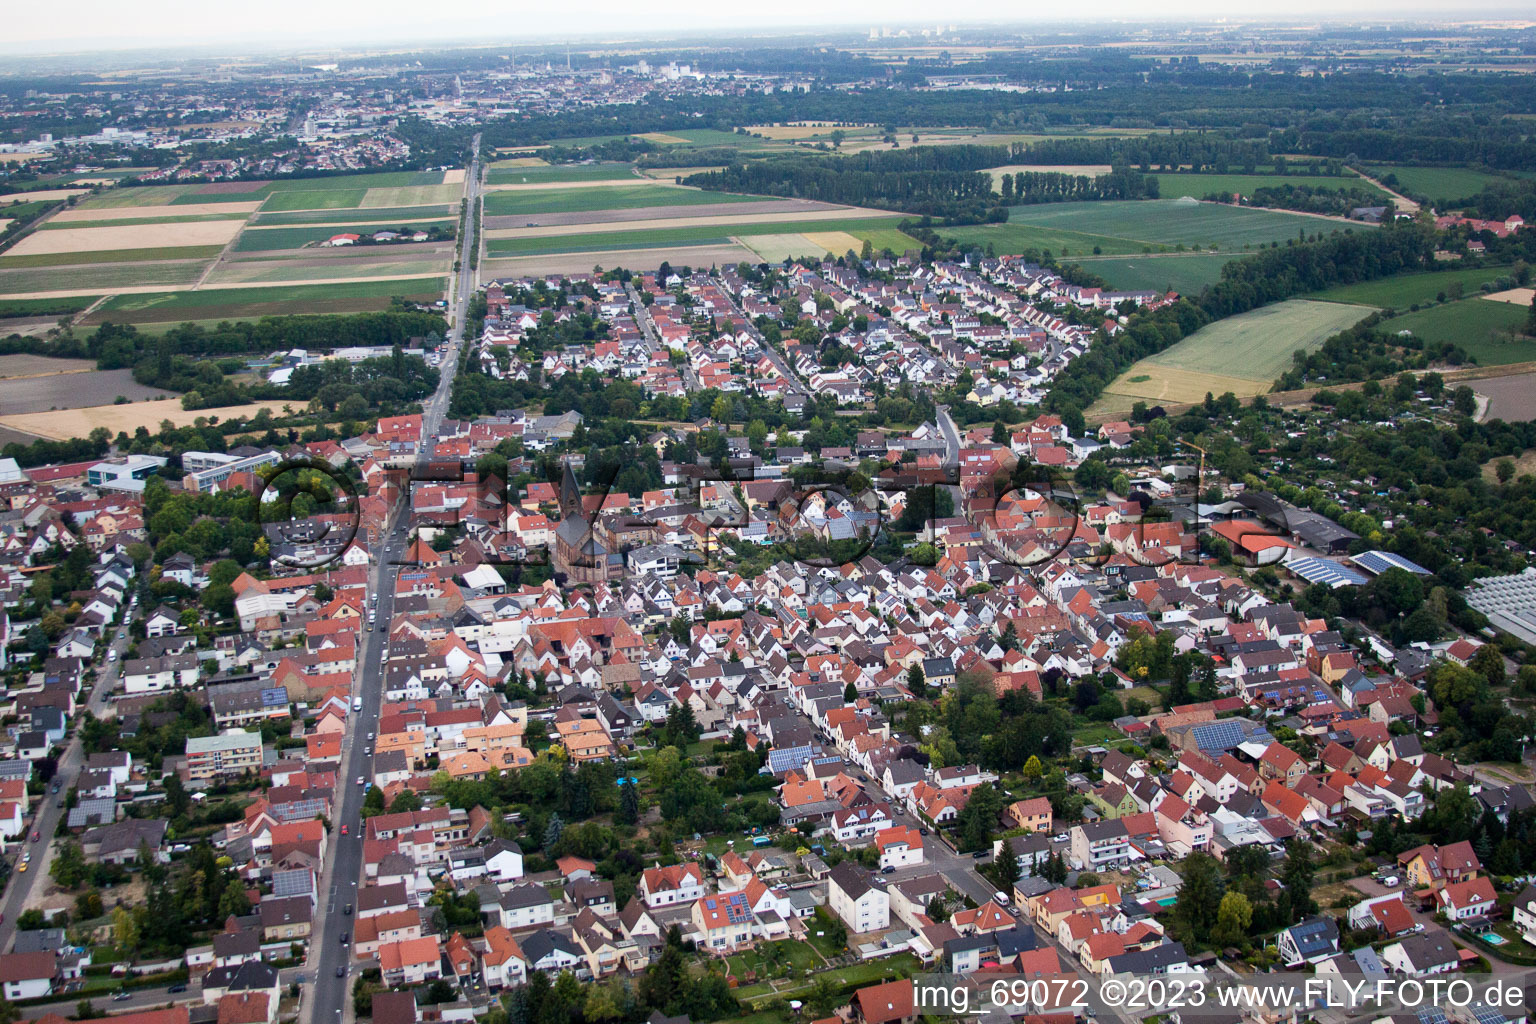 Luftbild von Ortsteil Bobenheim in Bobenheim-Roxheim im Bundesland Rheinland-Pfalz, Deutschland